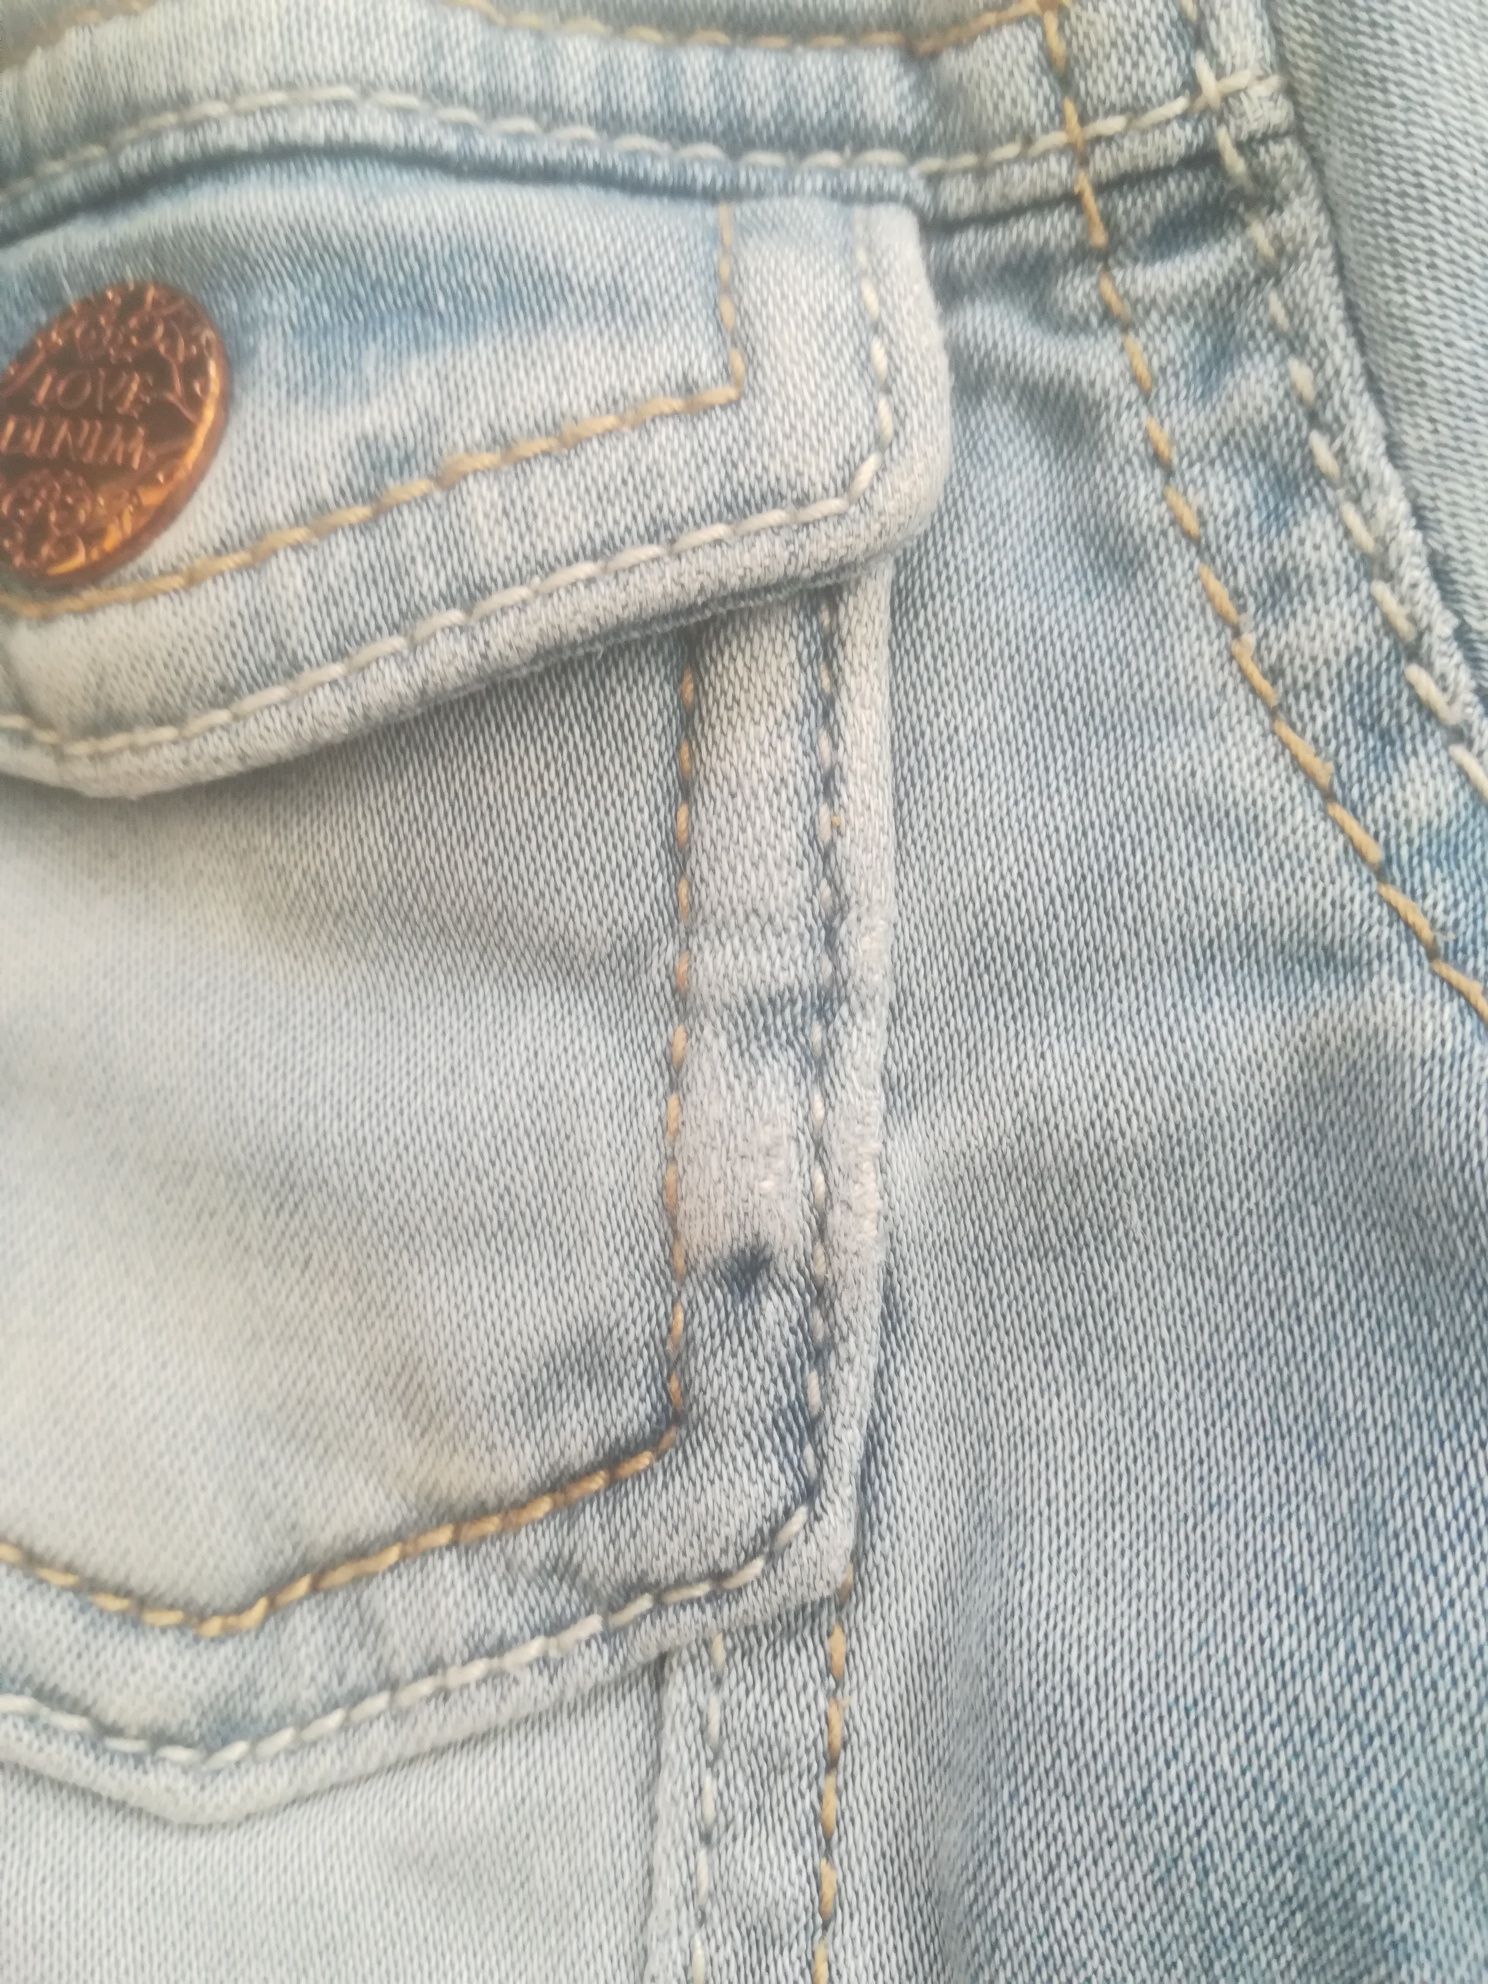 Zestaw ubranek ubrań dla dziewczynki rozm. 12-18 miesięcy kurtka jeans